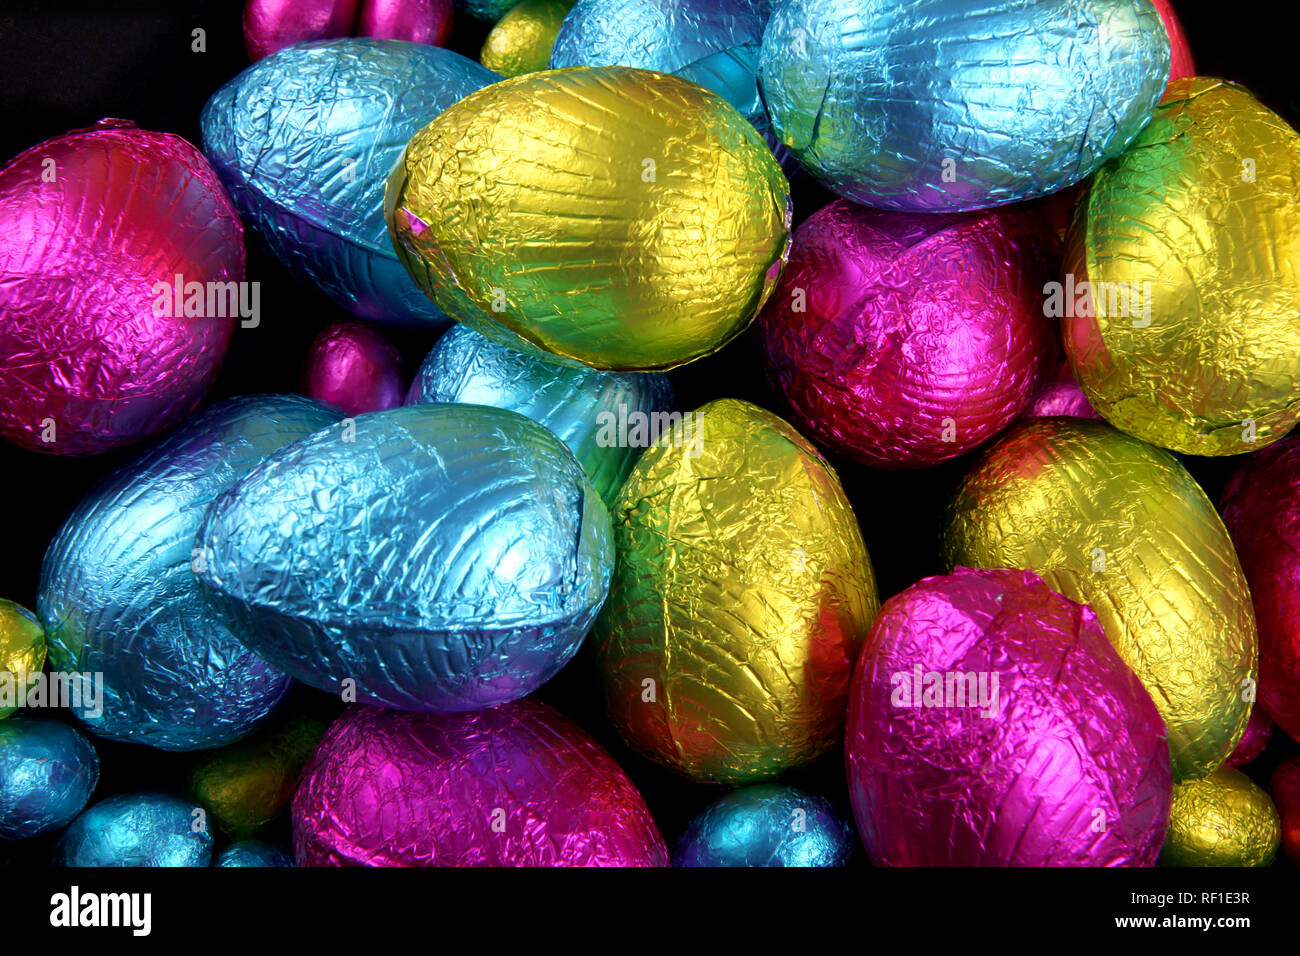 Haufen von Folie eingewickelt Schokoladeneier in rosa, blau & lindgrün. Stockfoto